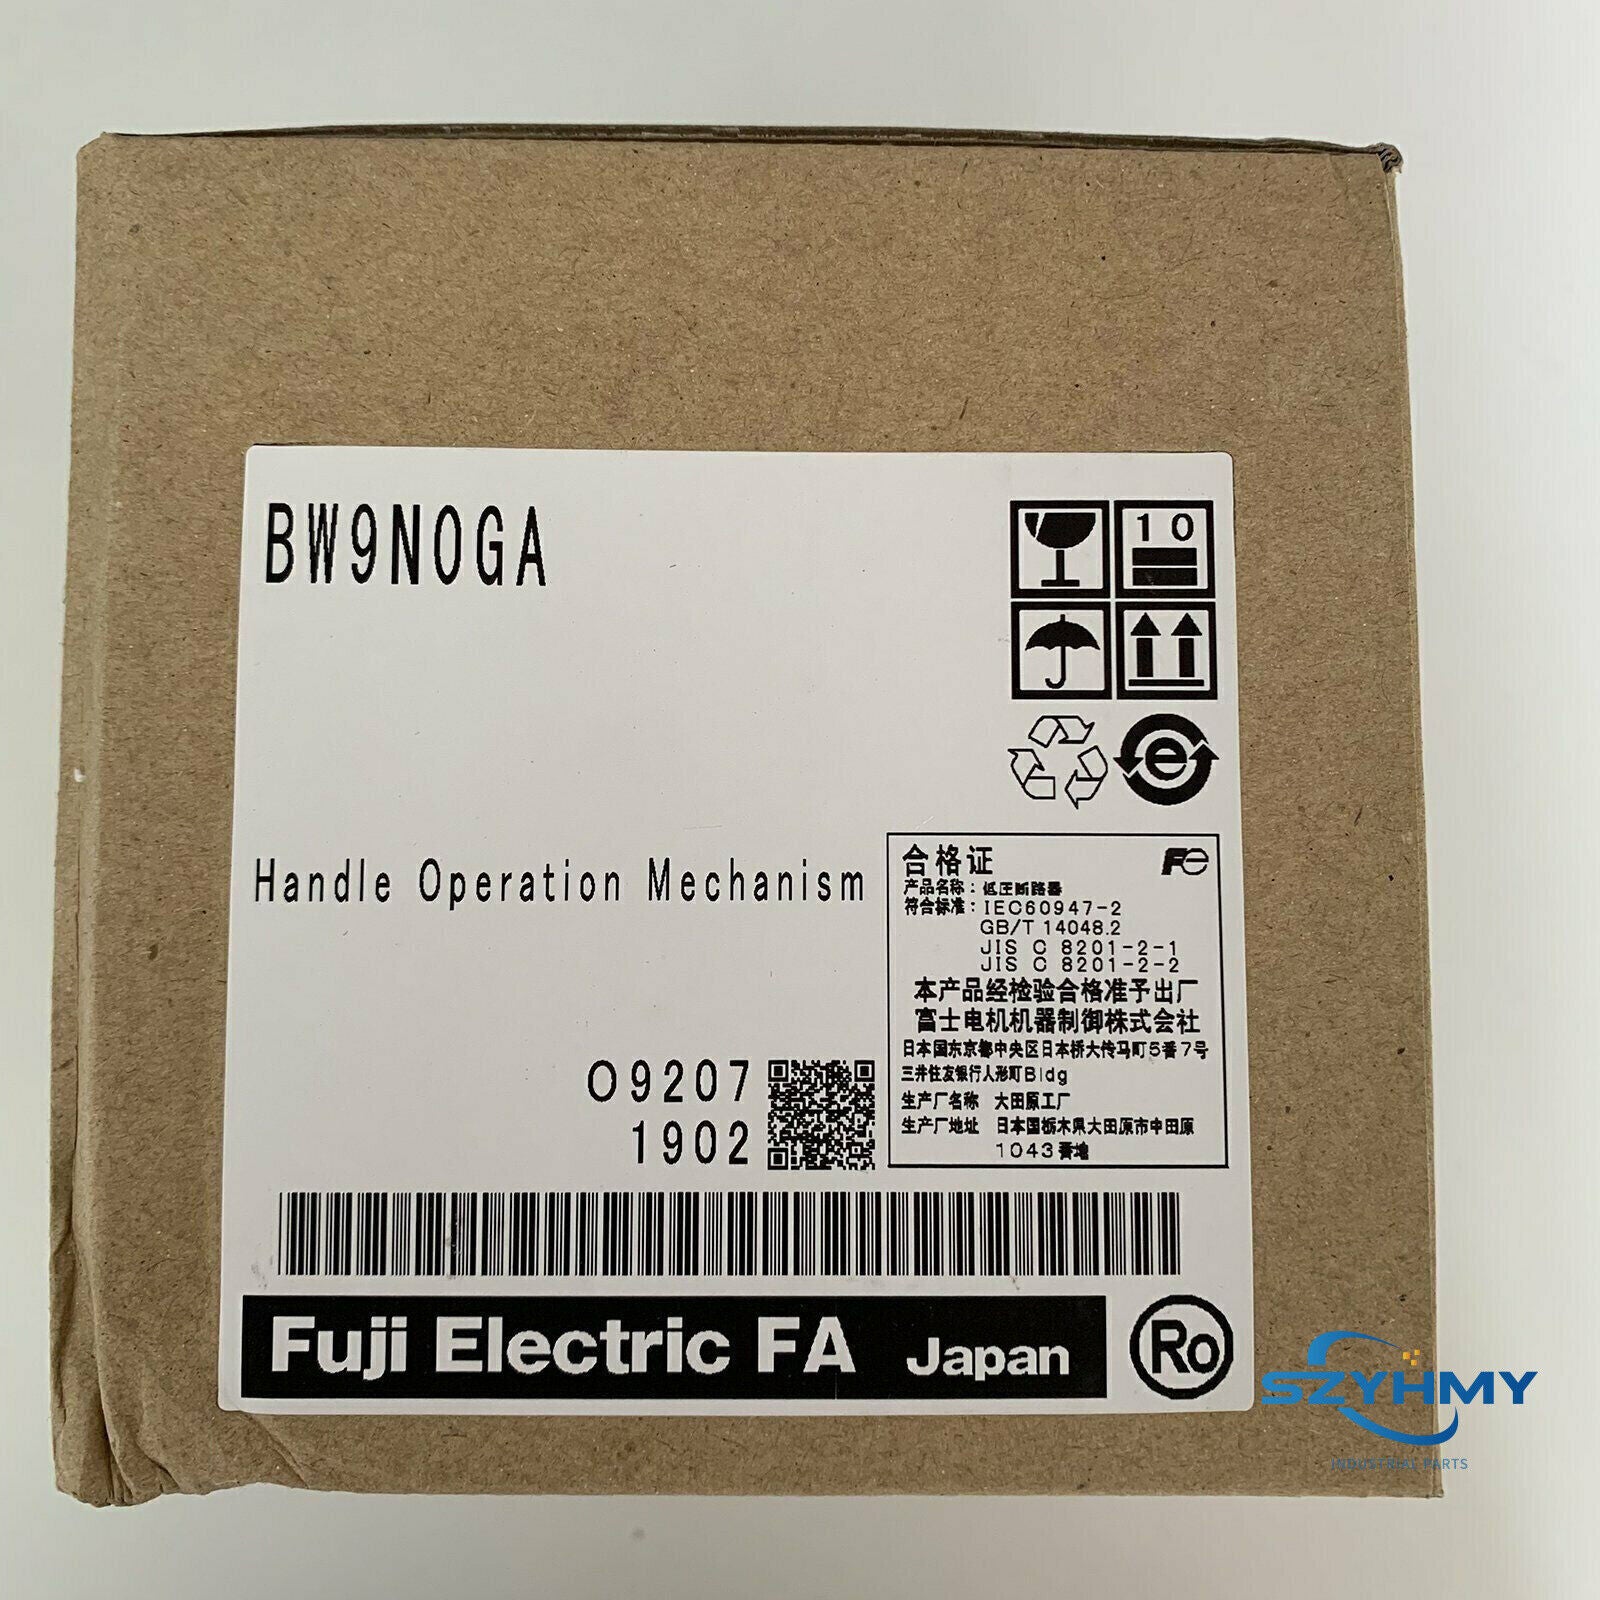 1pc new fuji bw9n0ga handle operation mechanism in box